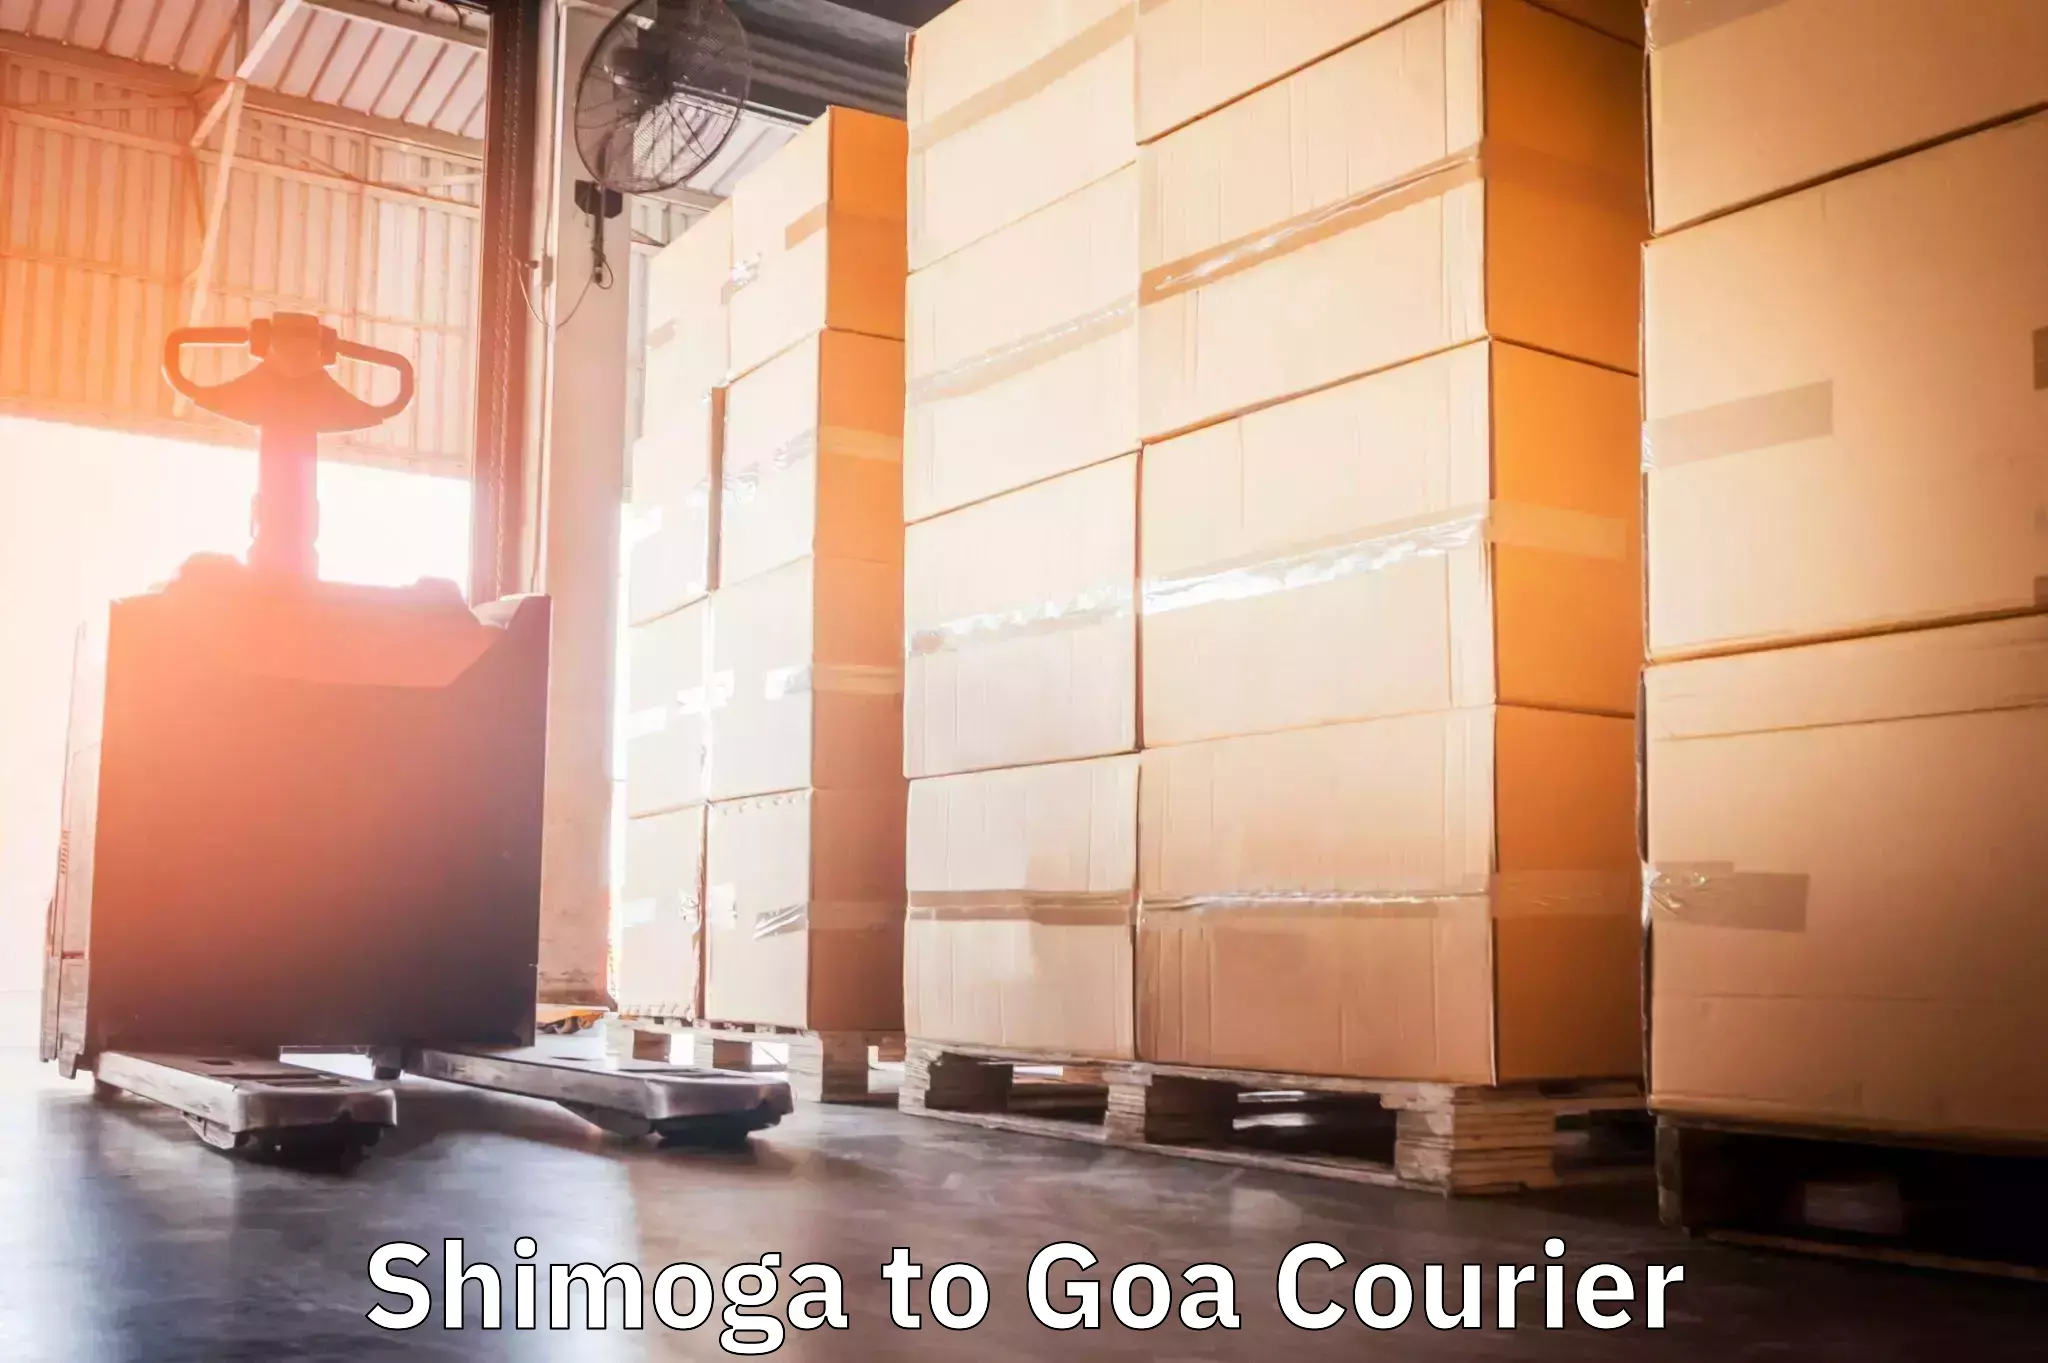 On-call courier service Shimoga to Ponda